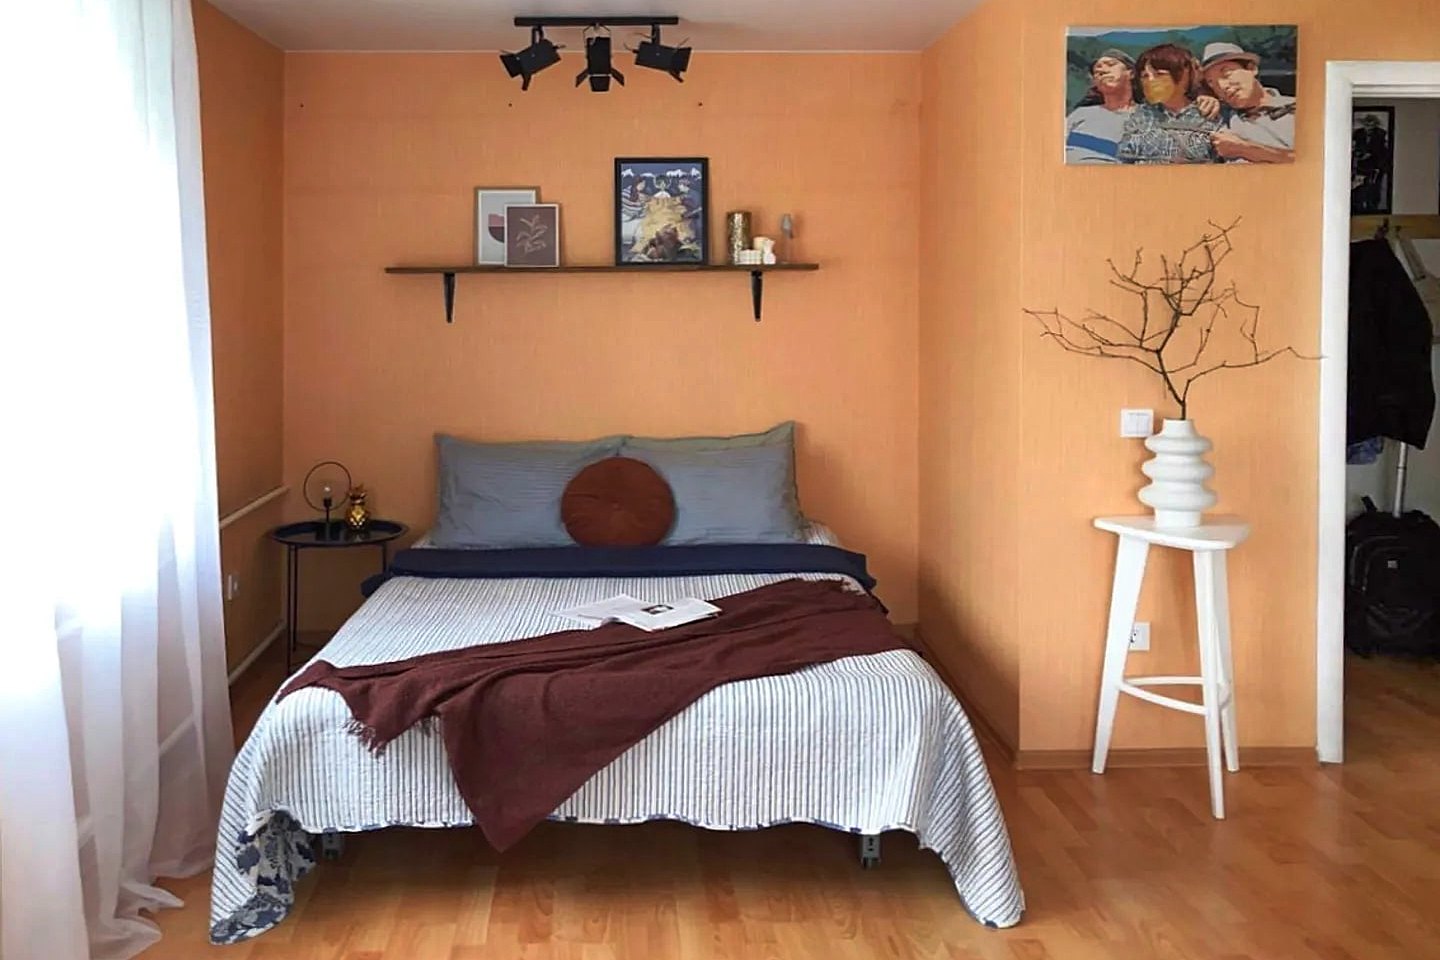 Стены в комнате - кремового оранжевого цвета.